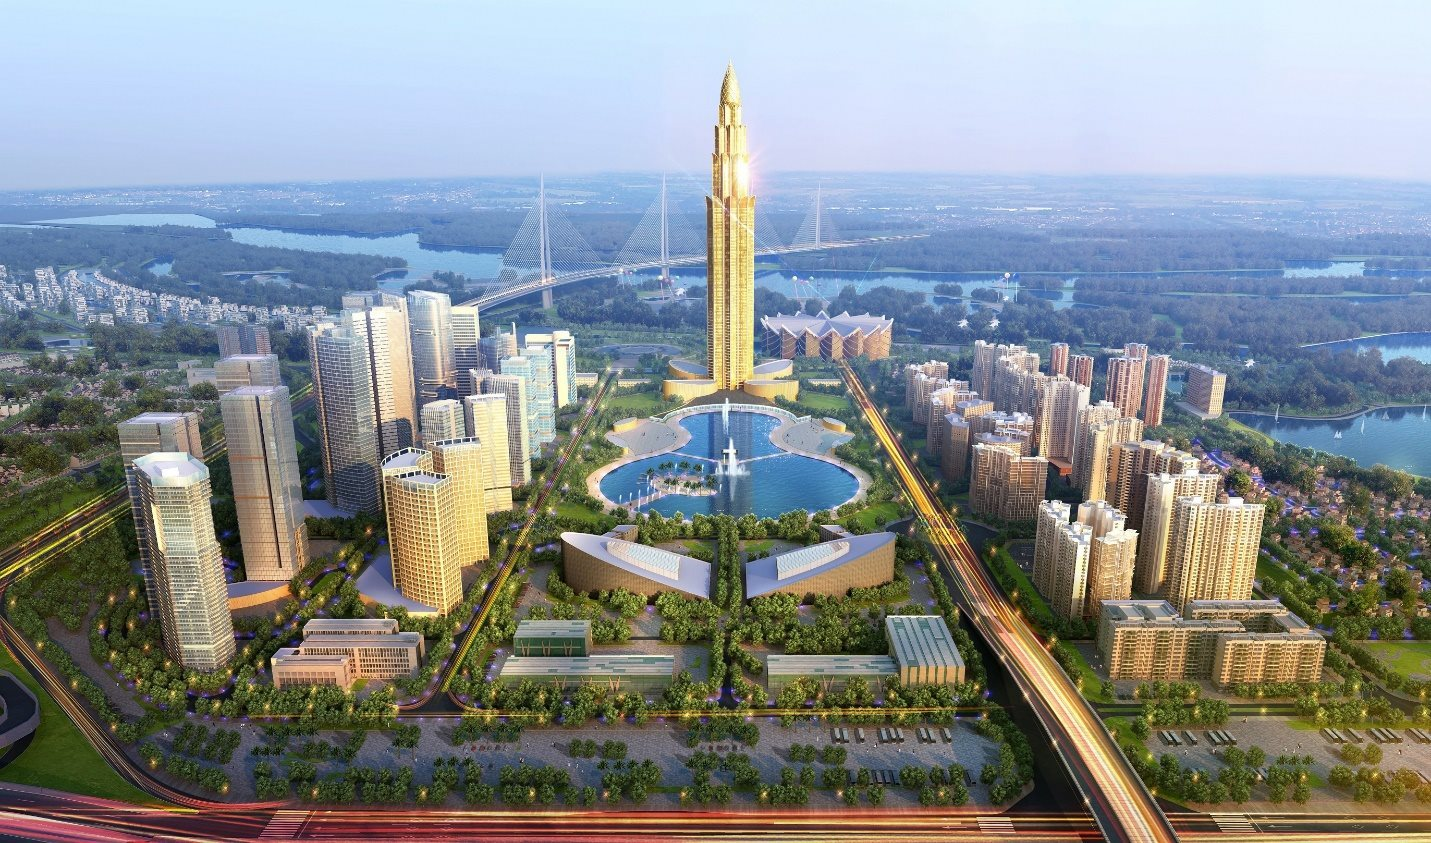 Cận cảnh khu đất chuẩn bị xây tháp tài chính 108 tầng cao nhất Việt Nam - Ảnh 3.